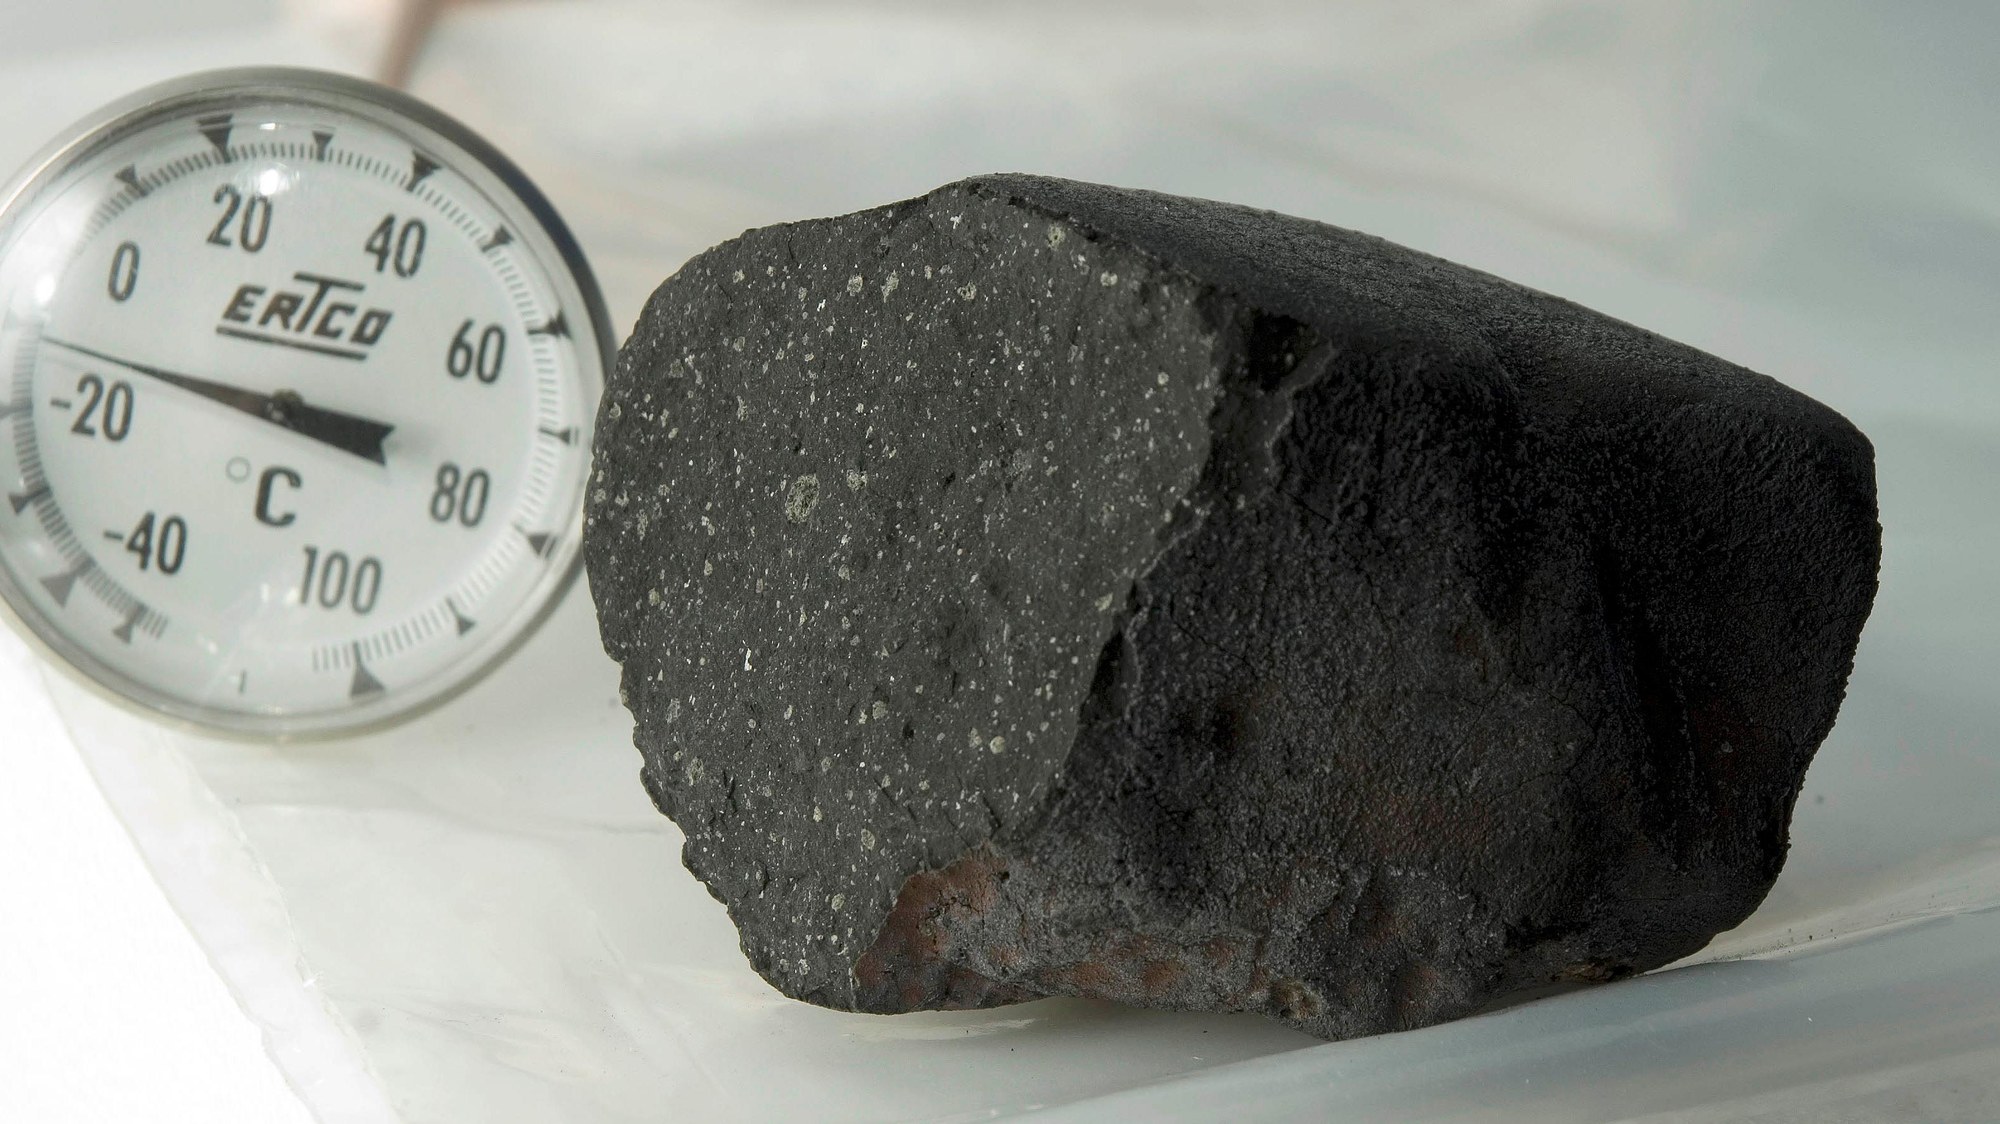 Meteorite from Tagish Lake